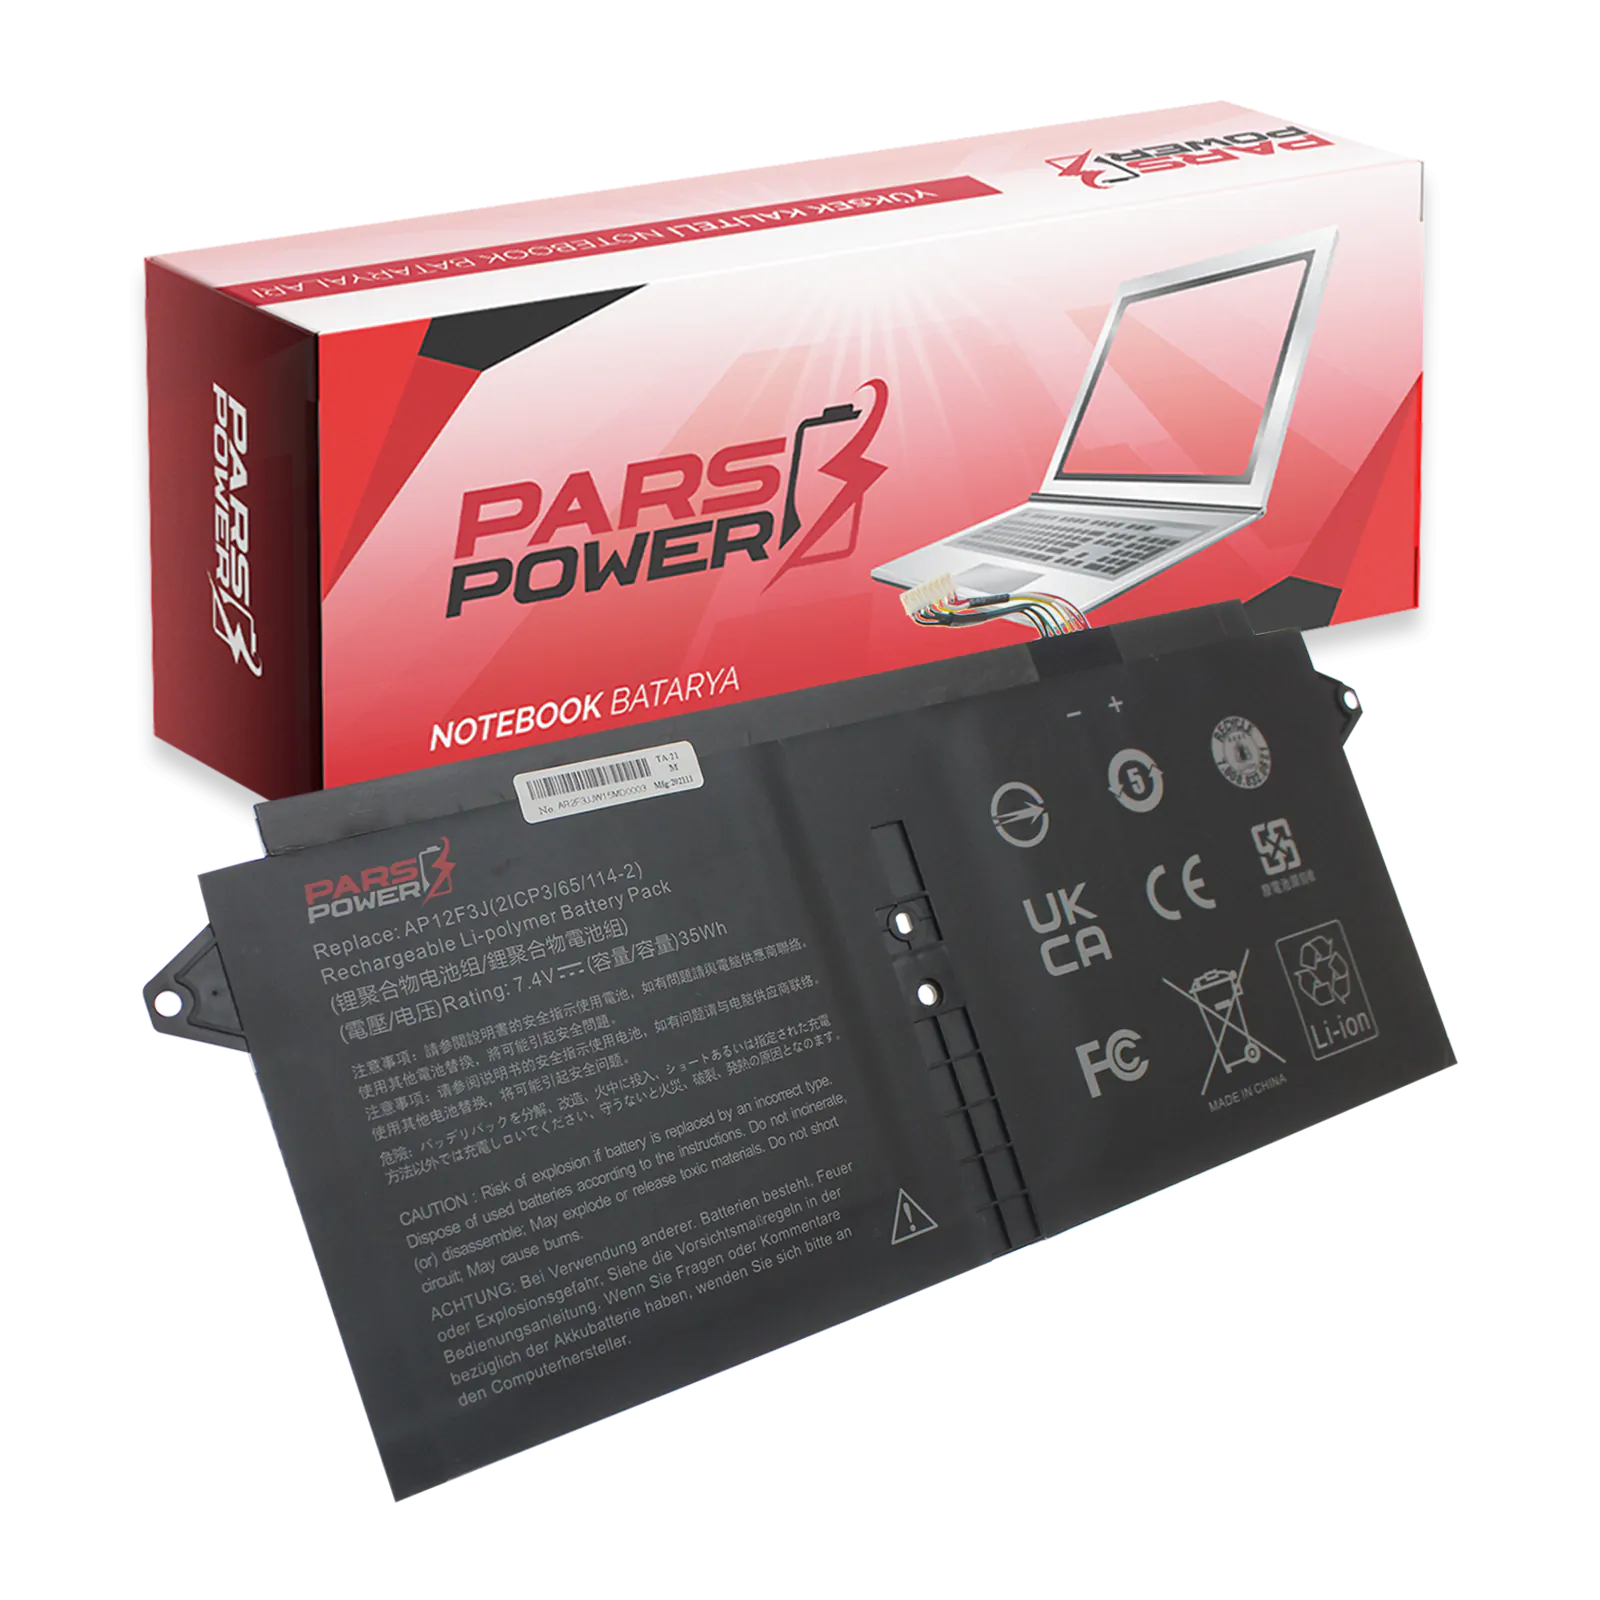 Acer Aspire S7-191, S7-391 Serisi, AP12F3J, ms-2364 Notebook Batarya - Pil (Pars Power)